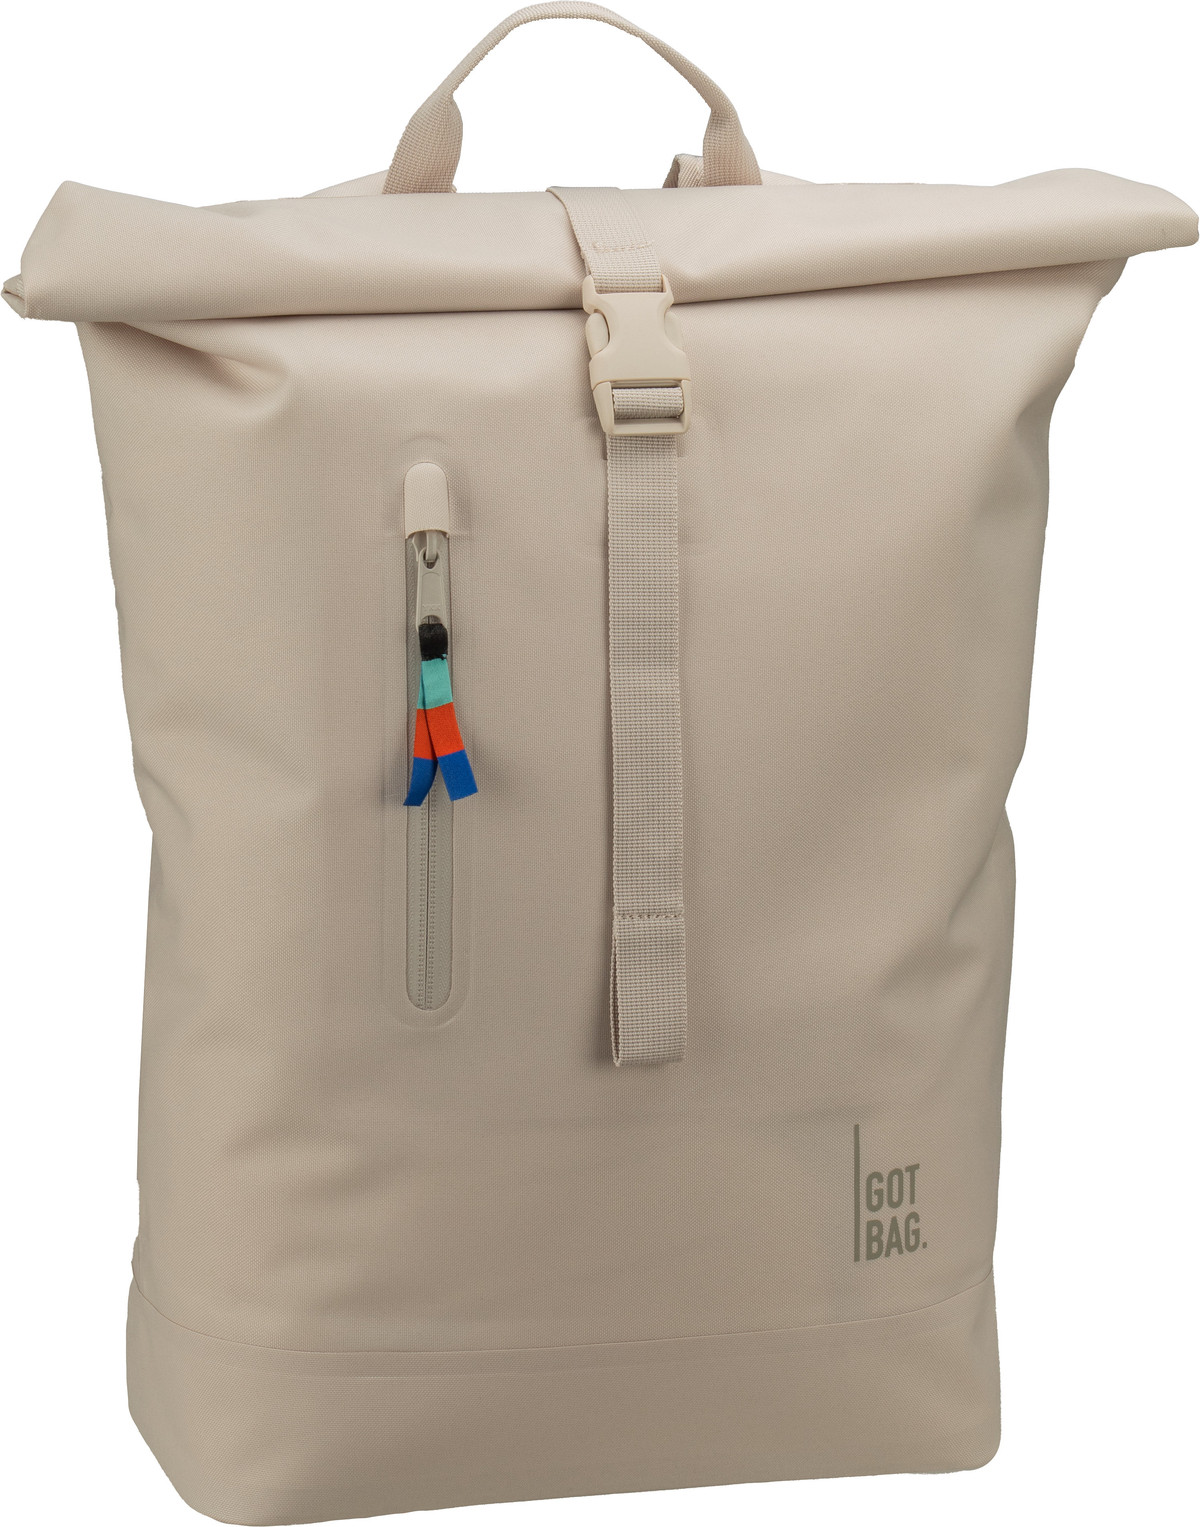 GOT BAG Rolltop Lite 2.0  in Beige (26 Liter), Rucksack / Backpack